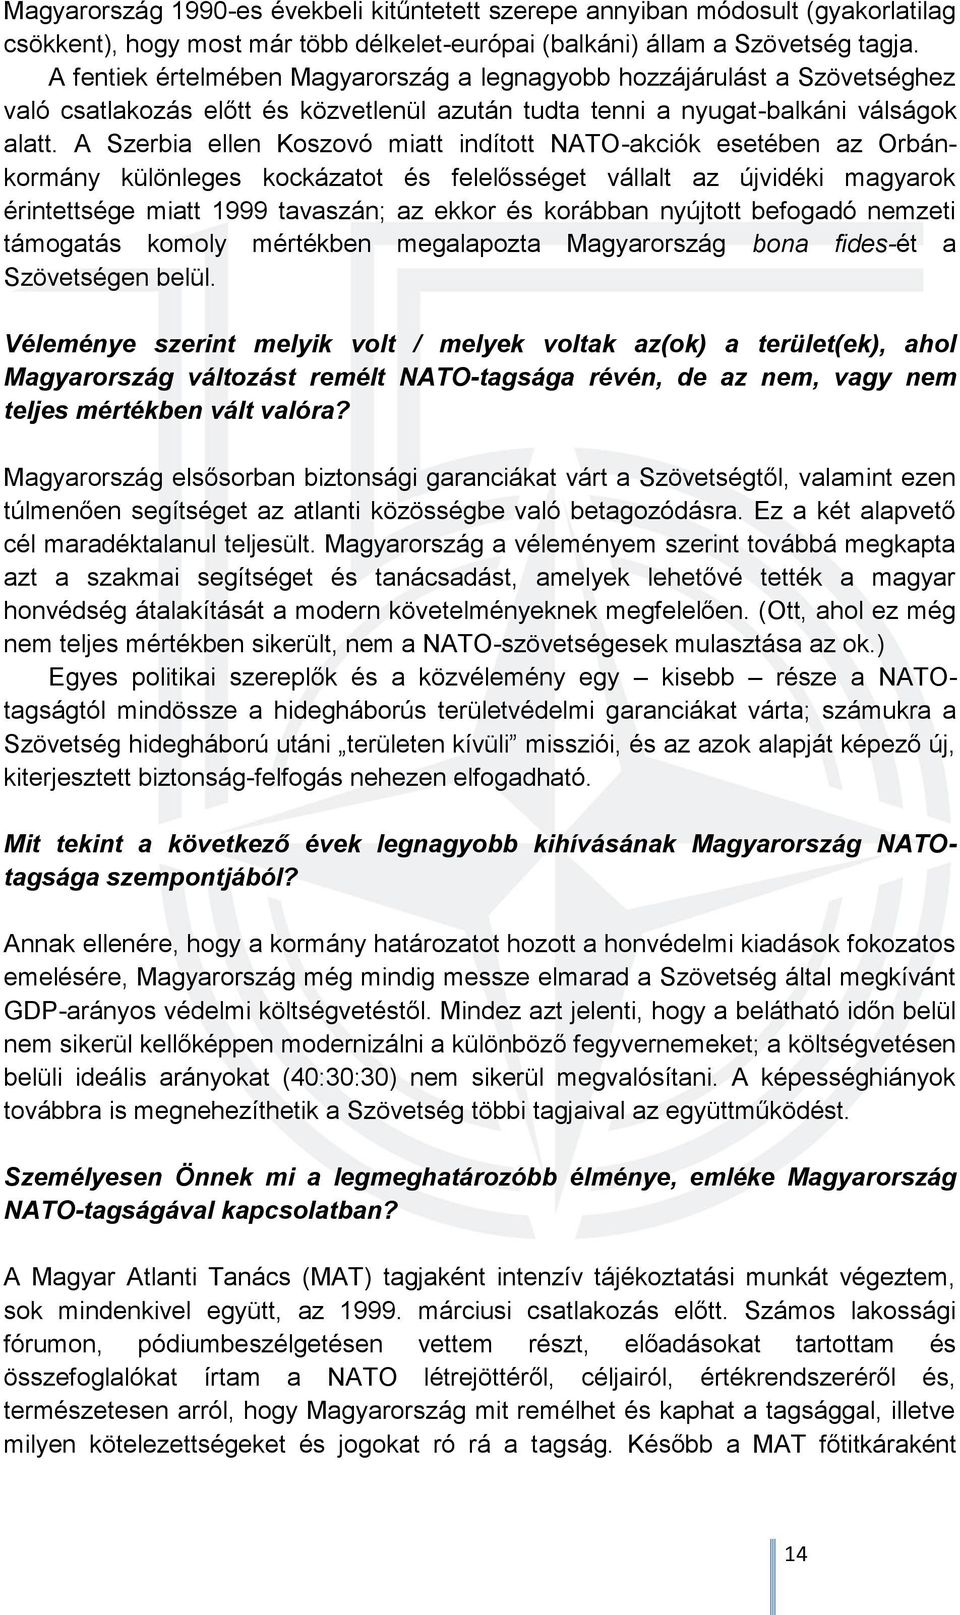 A Szerbia ellen Koszovó miatt indított NATO-akciók esetében az Orbánkormány különleges kockázatot és felelősséget vállalt az újvidéki magyarok érintettsége miatt 1999 tavaszán; az ekkor és korábban